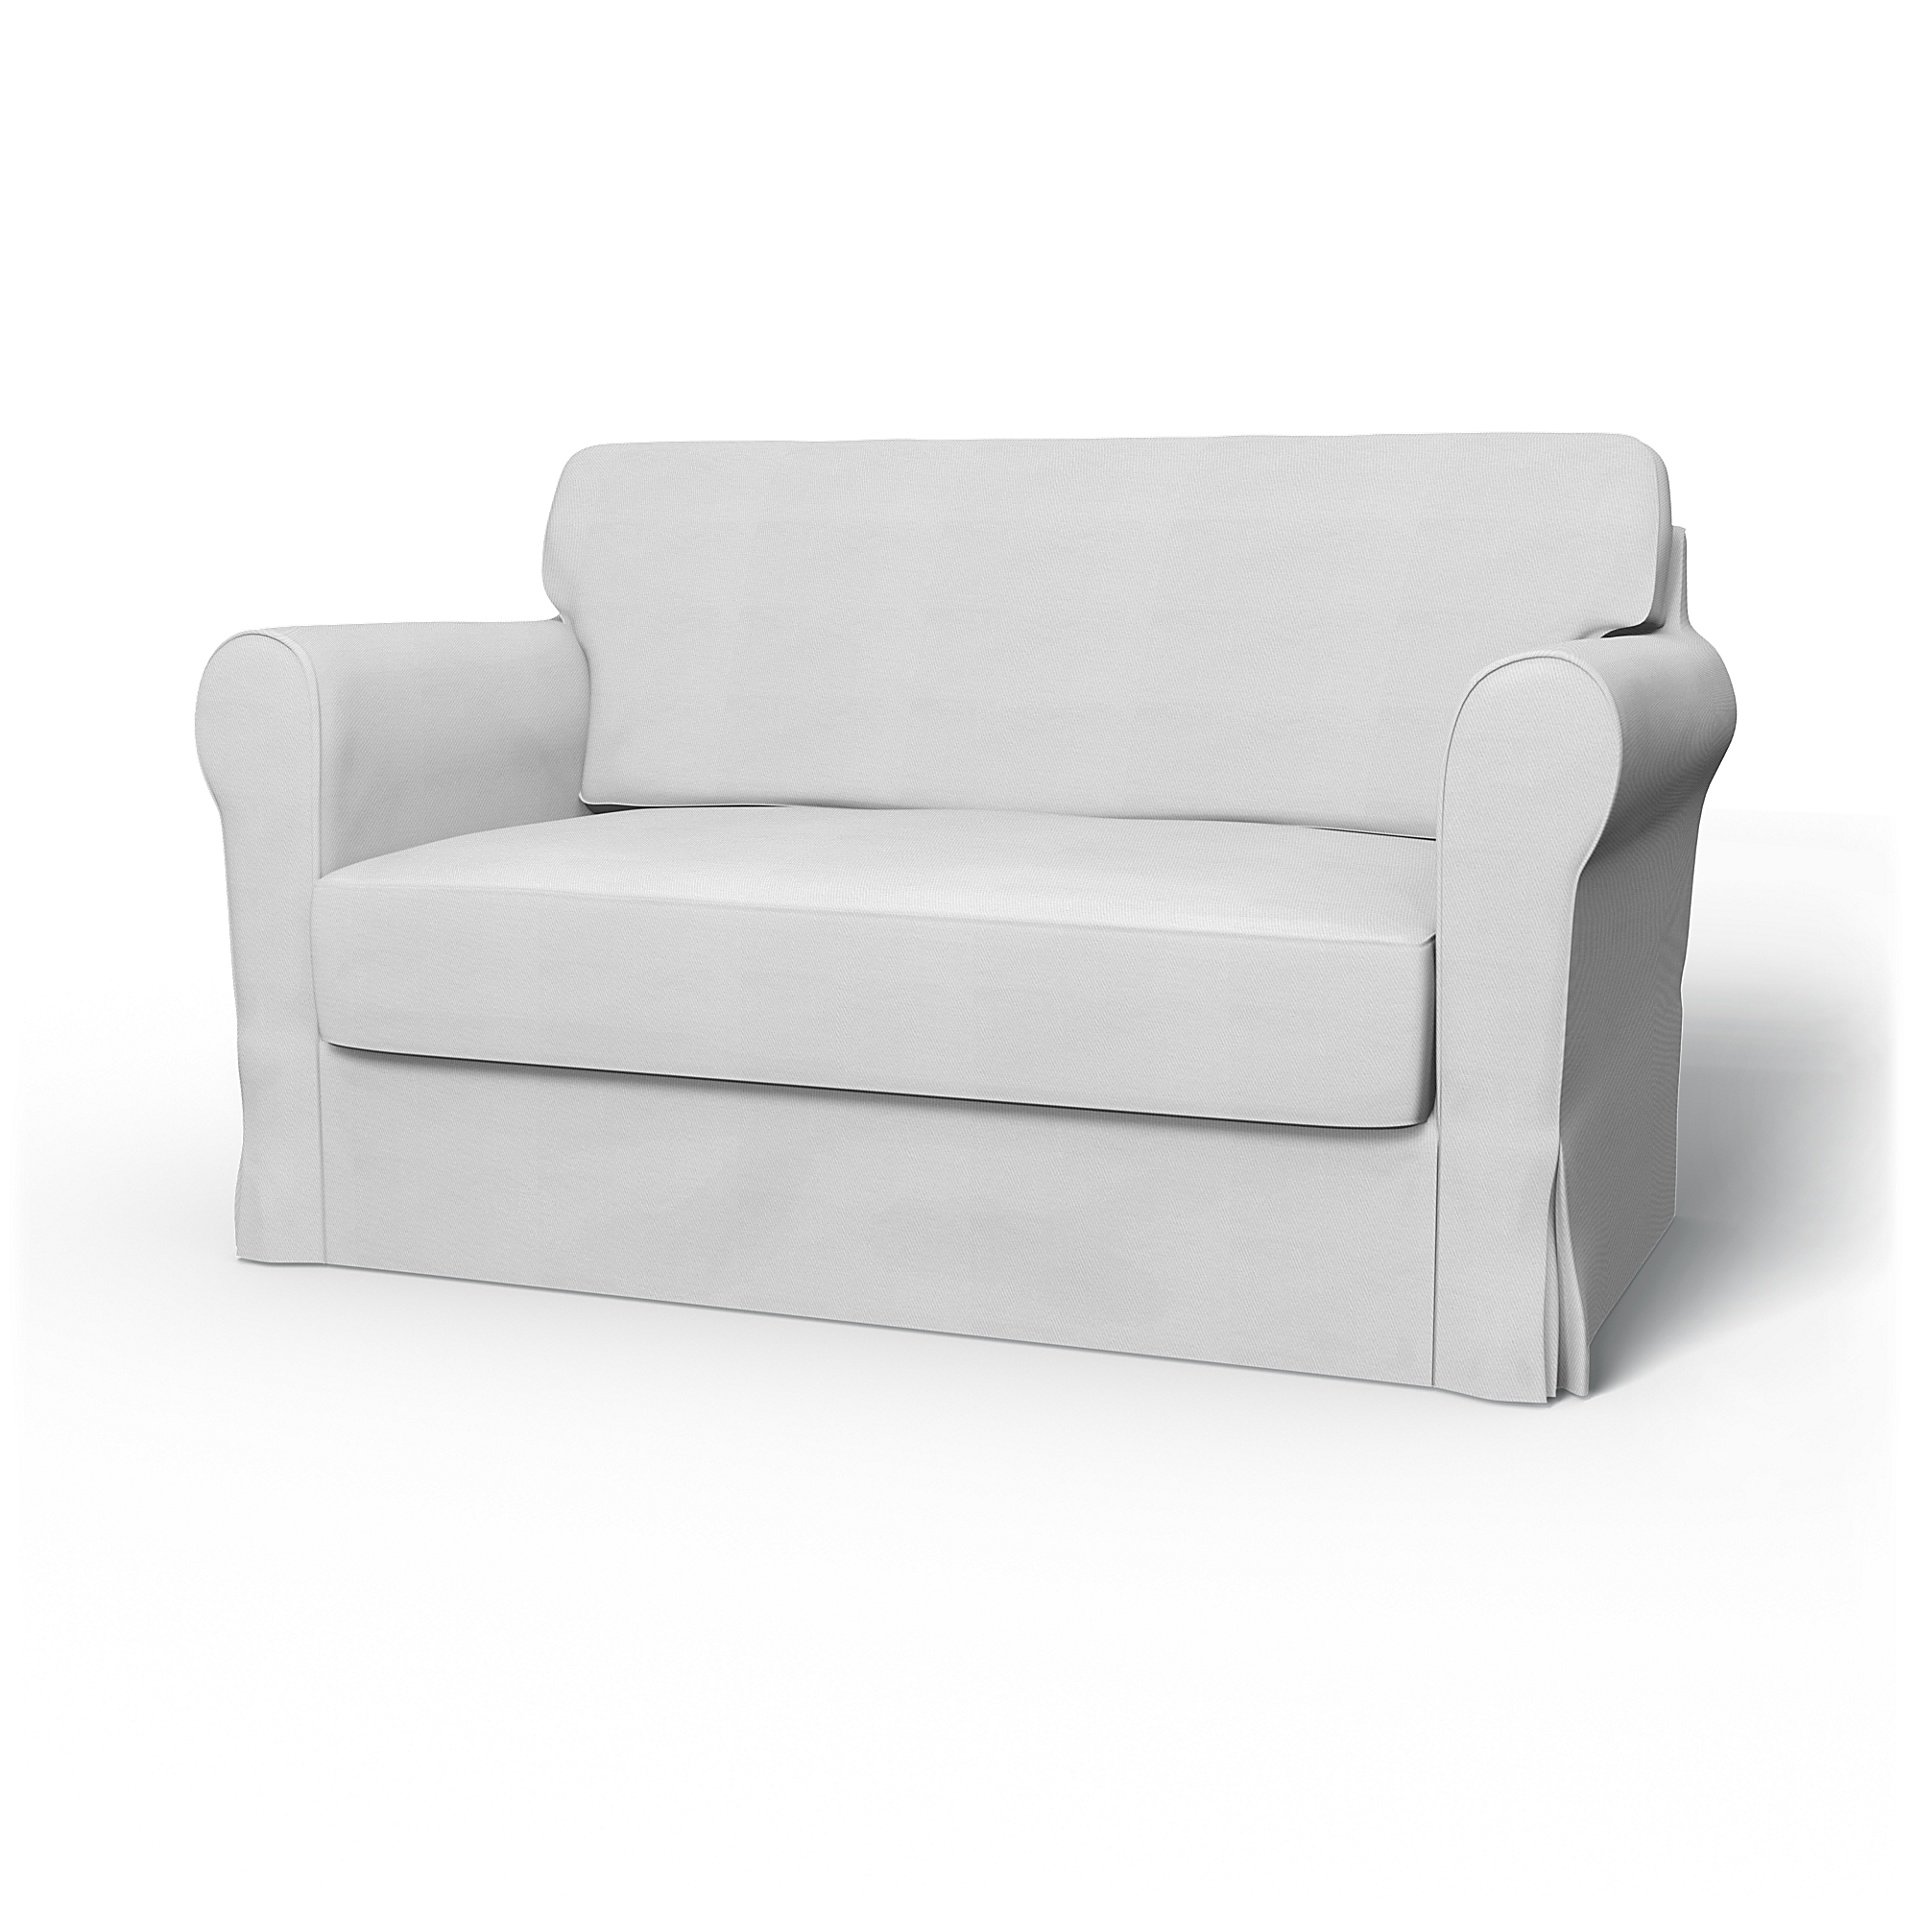 Discontinued Ikea Hagalund Sofa Beds, White Leather Sleeper Sofa Ikea